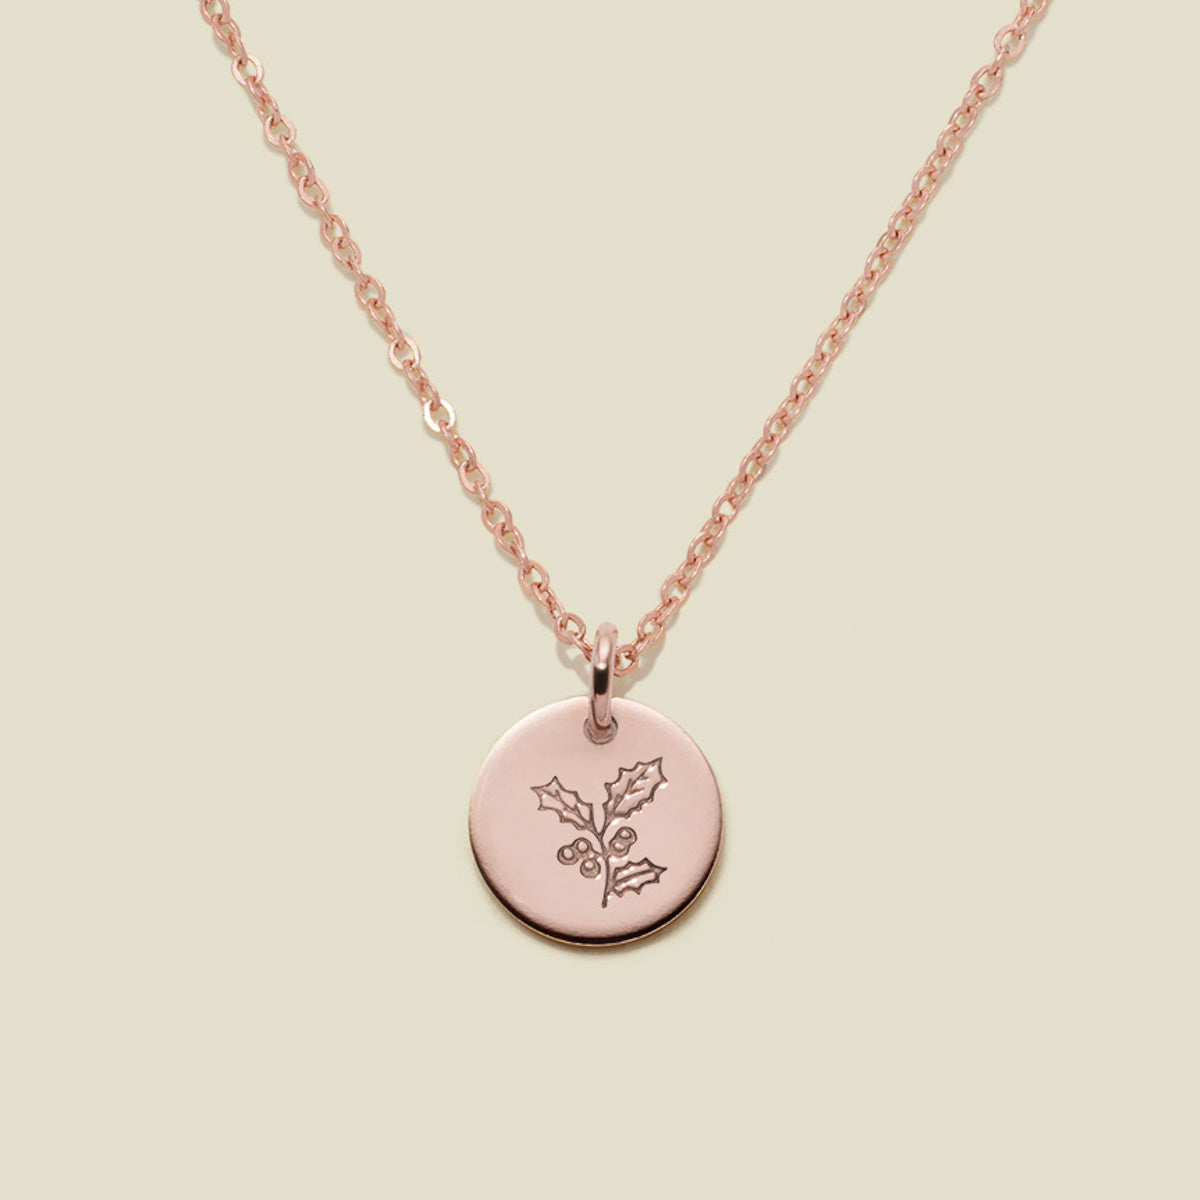 December Birth Flower Necklace Rose Gold Filled / 3/8" / 16"-18" Necklace